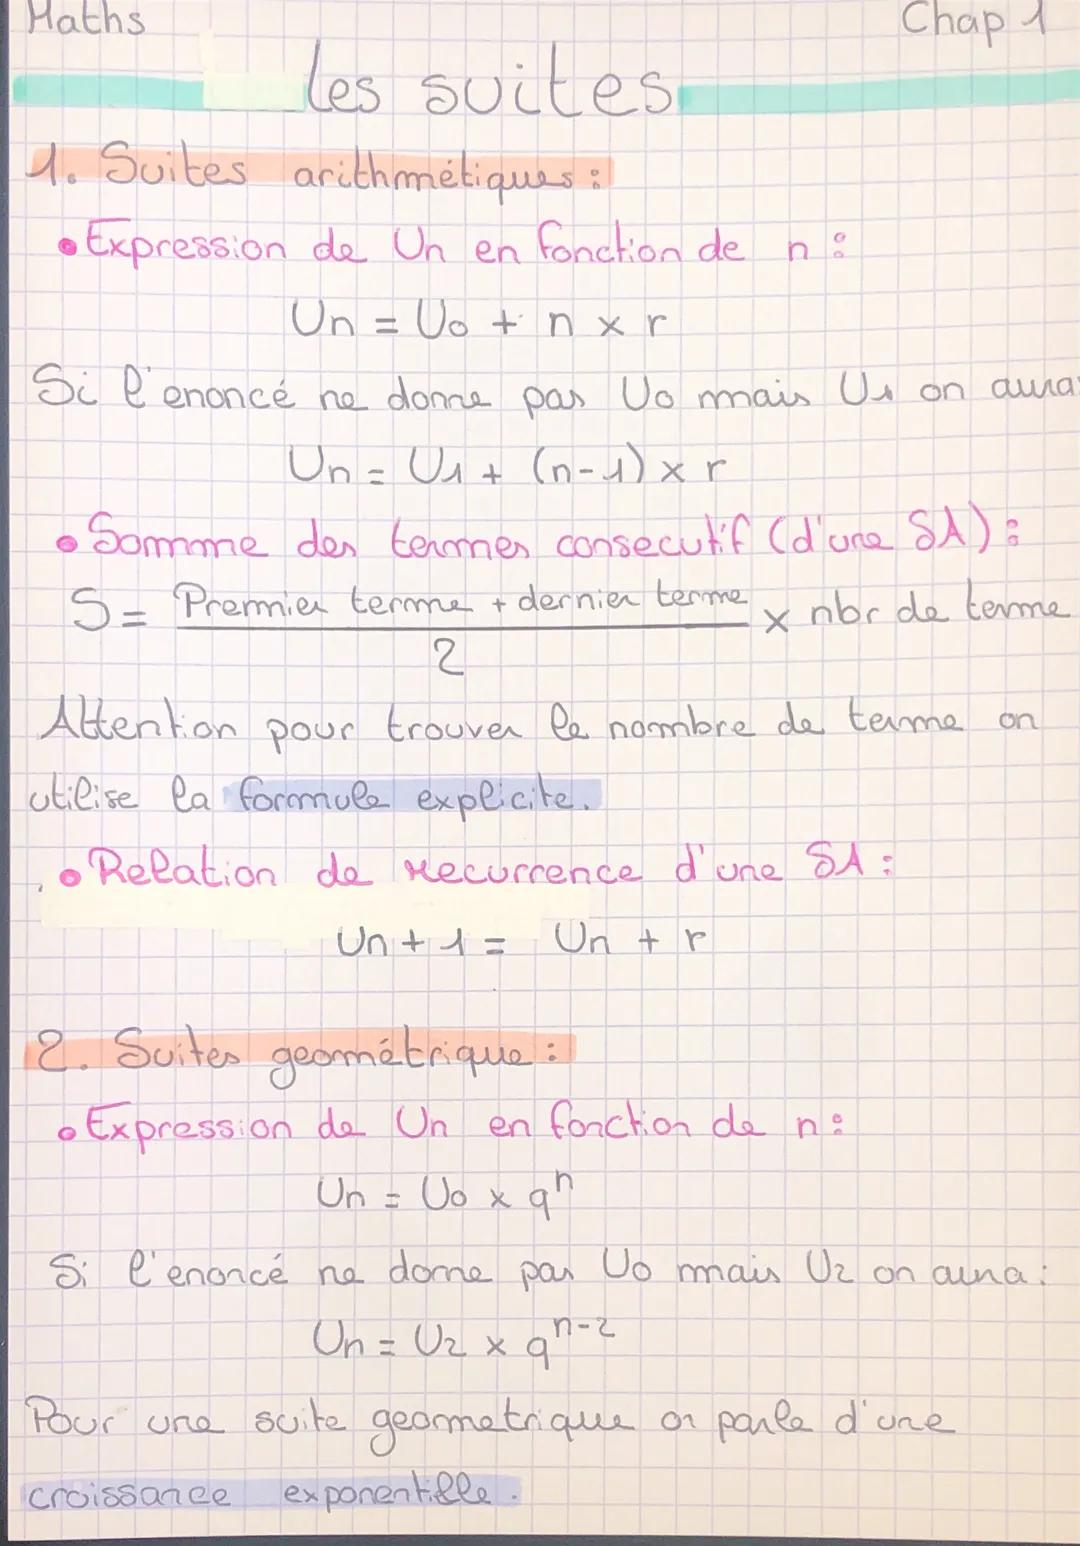 Haths
1. Suites arithmétiques :
•Expression de Un en fonction de
les suites.
Un = U₁ + n x r
Si l'enoncé ne donne pas Uo mais Us
Un = U₁ + (